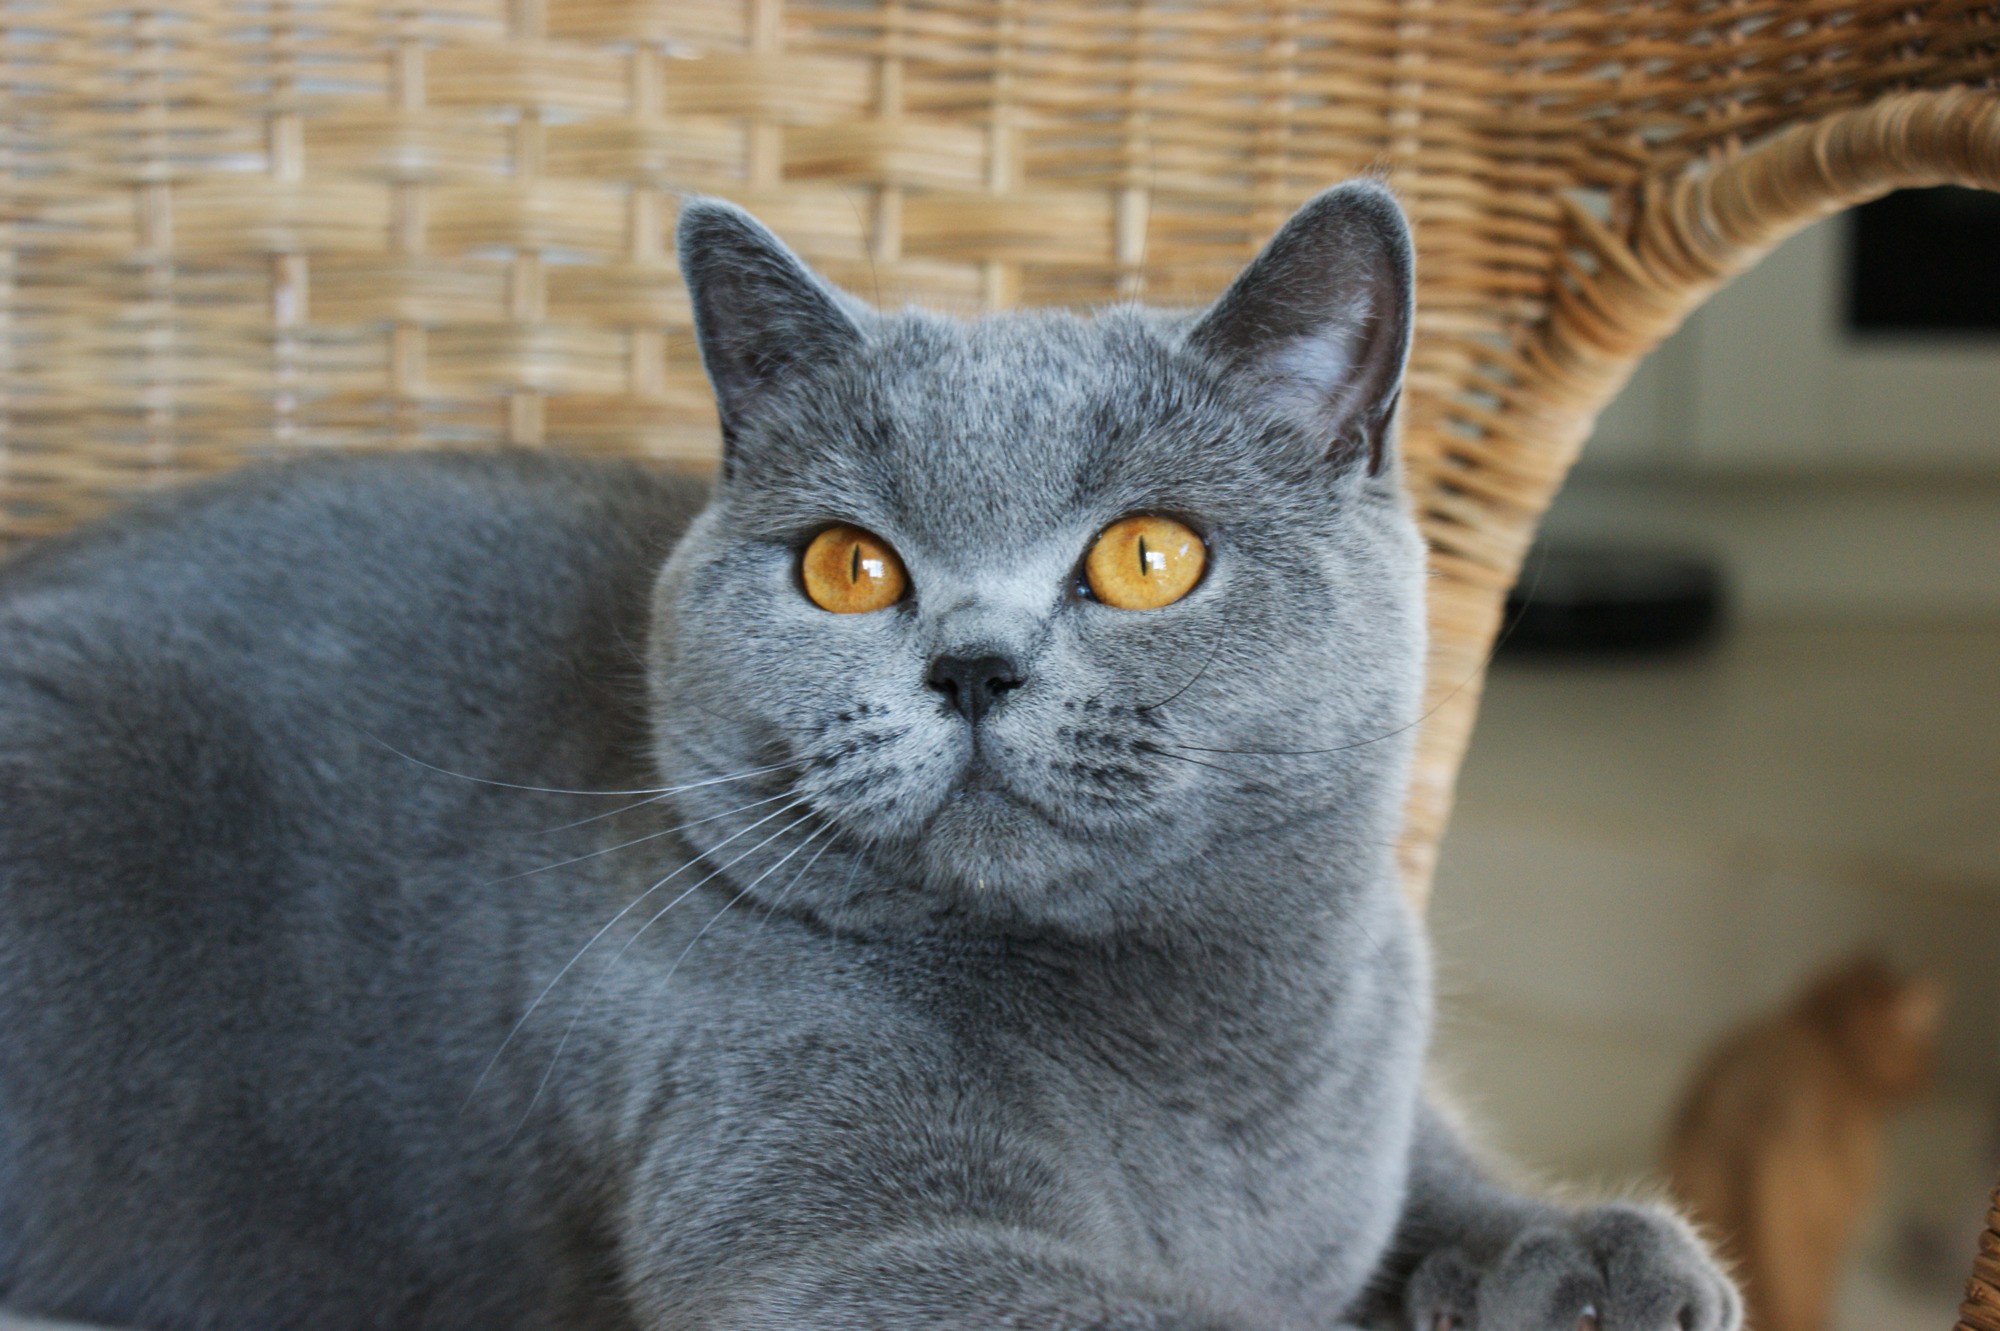 Фотографии породы британских кошек. Британская короткошёрстная кошка. Британская короткошёрстная кошка голубая. Британская кошка короткошерстная серая. Британская короткошёрстная кошка шартрез.